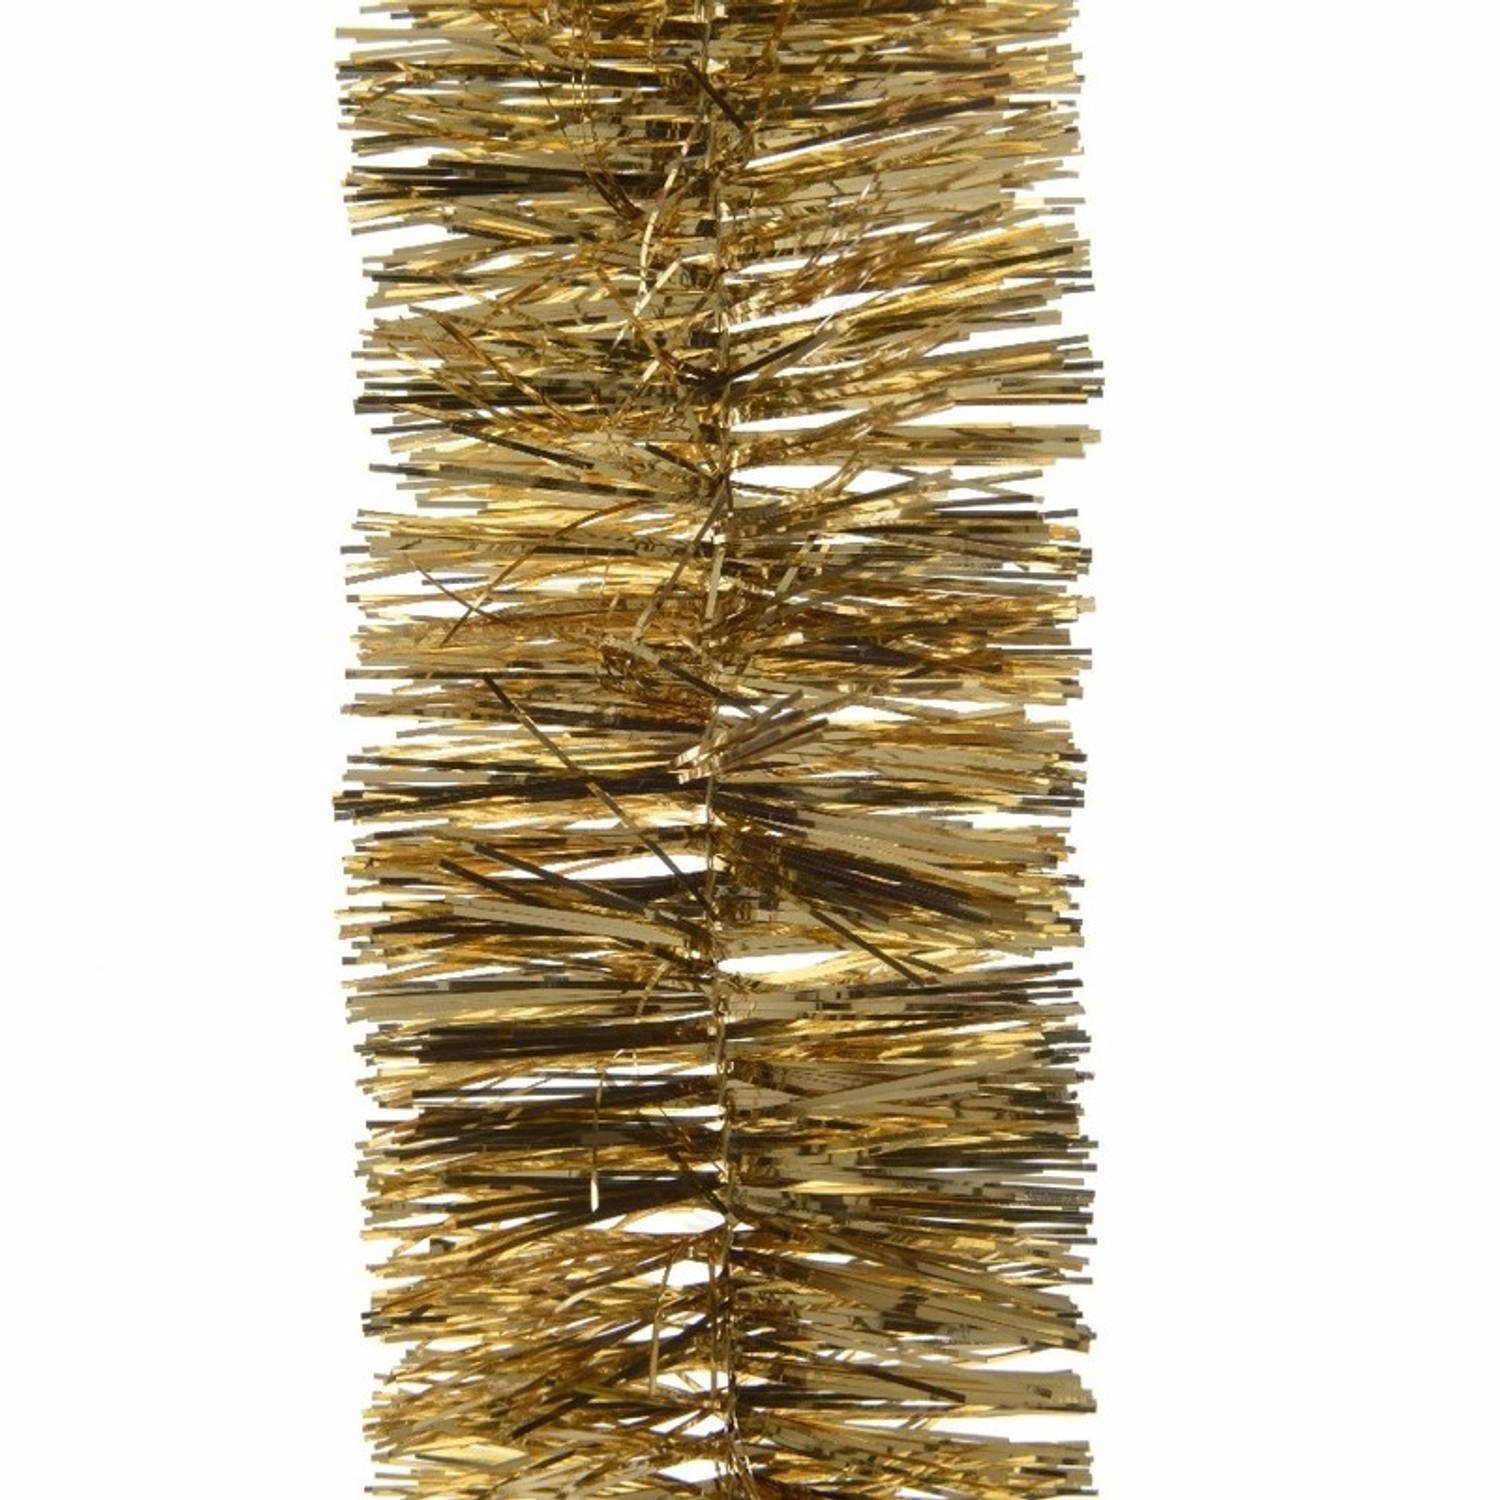 4x Kerst lametta guirlandes goud 270 cm kerstboom versiering/decoratie - Kerstslingers